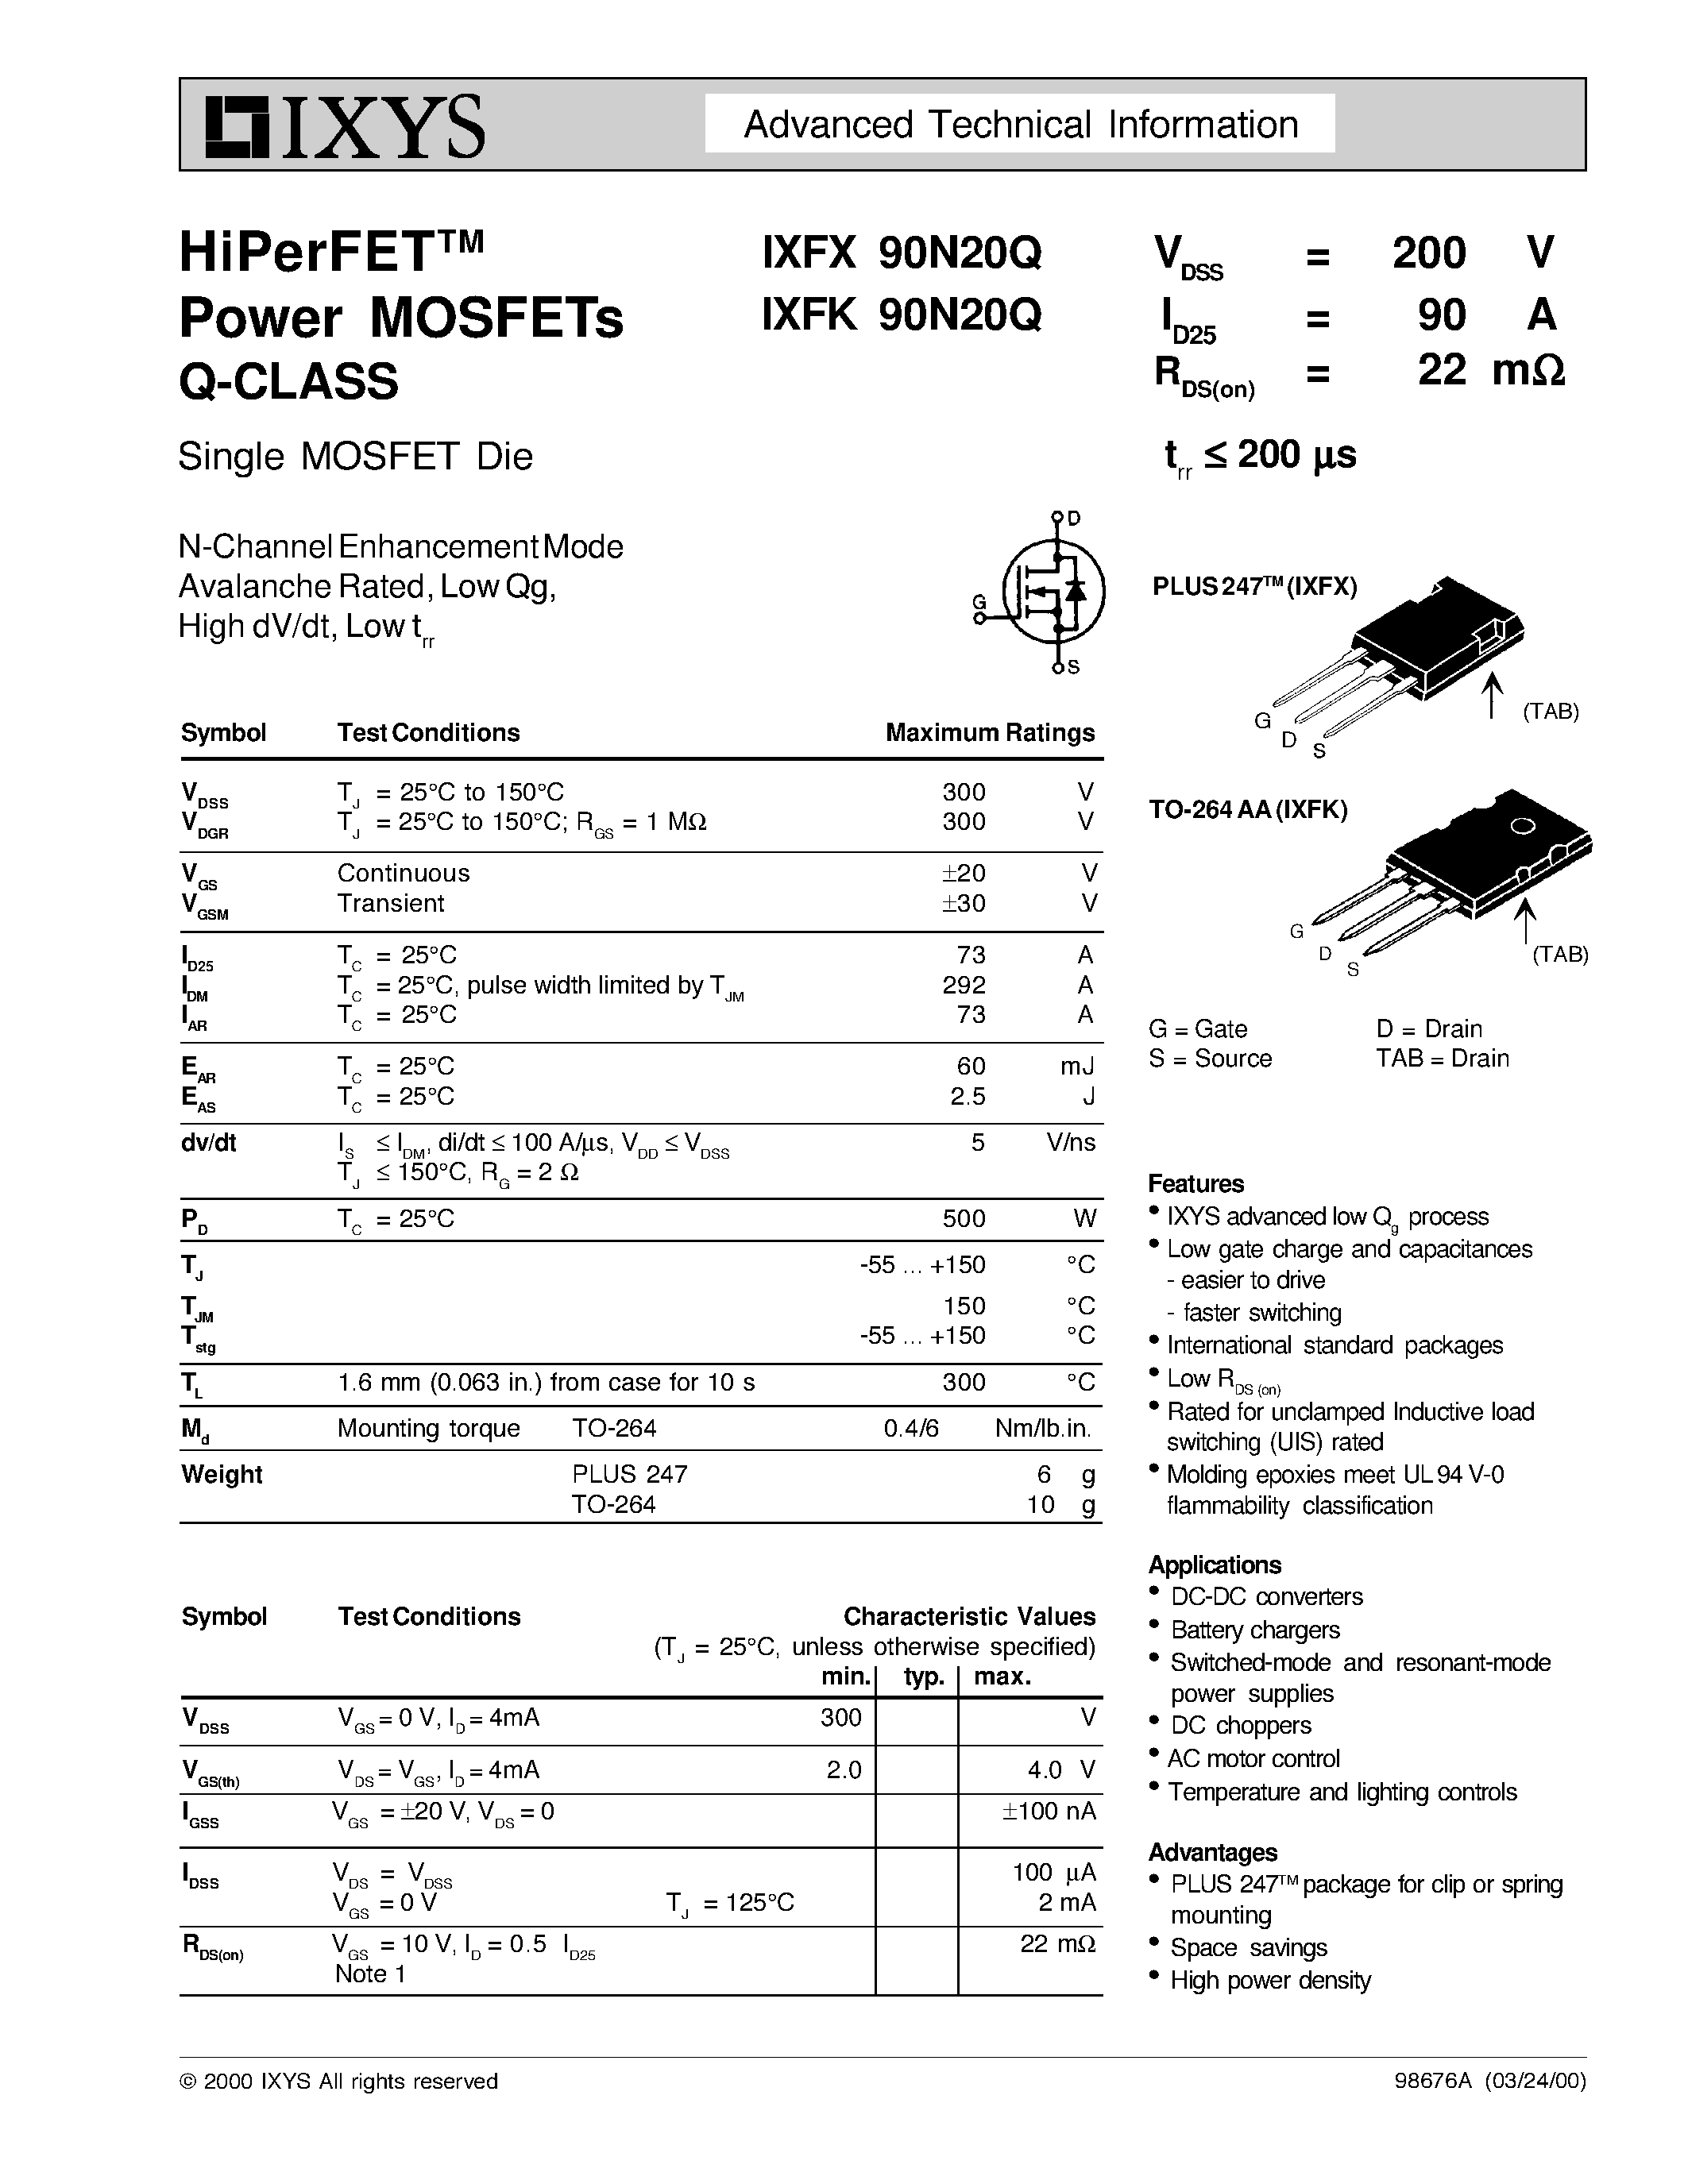 Даташит IXFX90N20Q - HiPerFETTM Power MOSFETs Q-CLASS страница 1